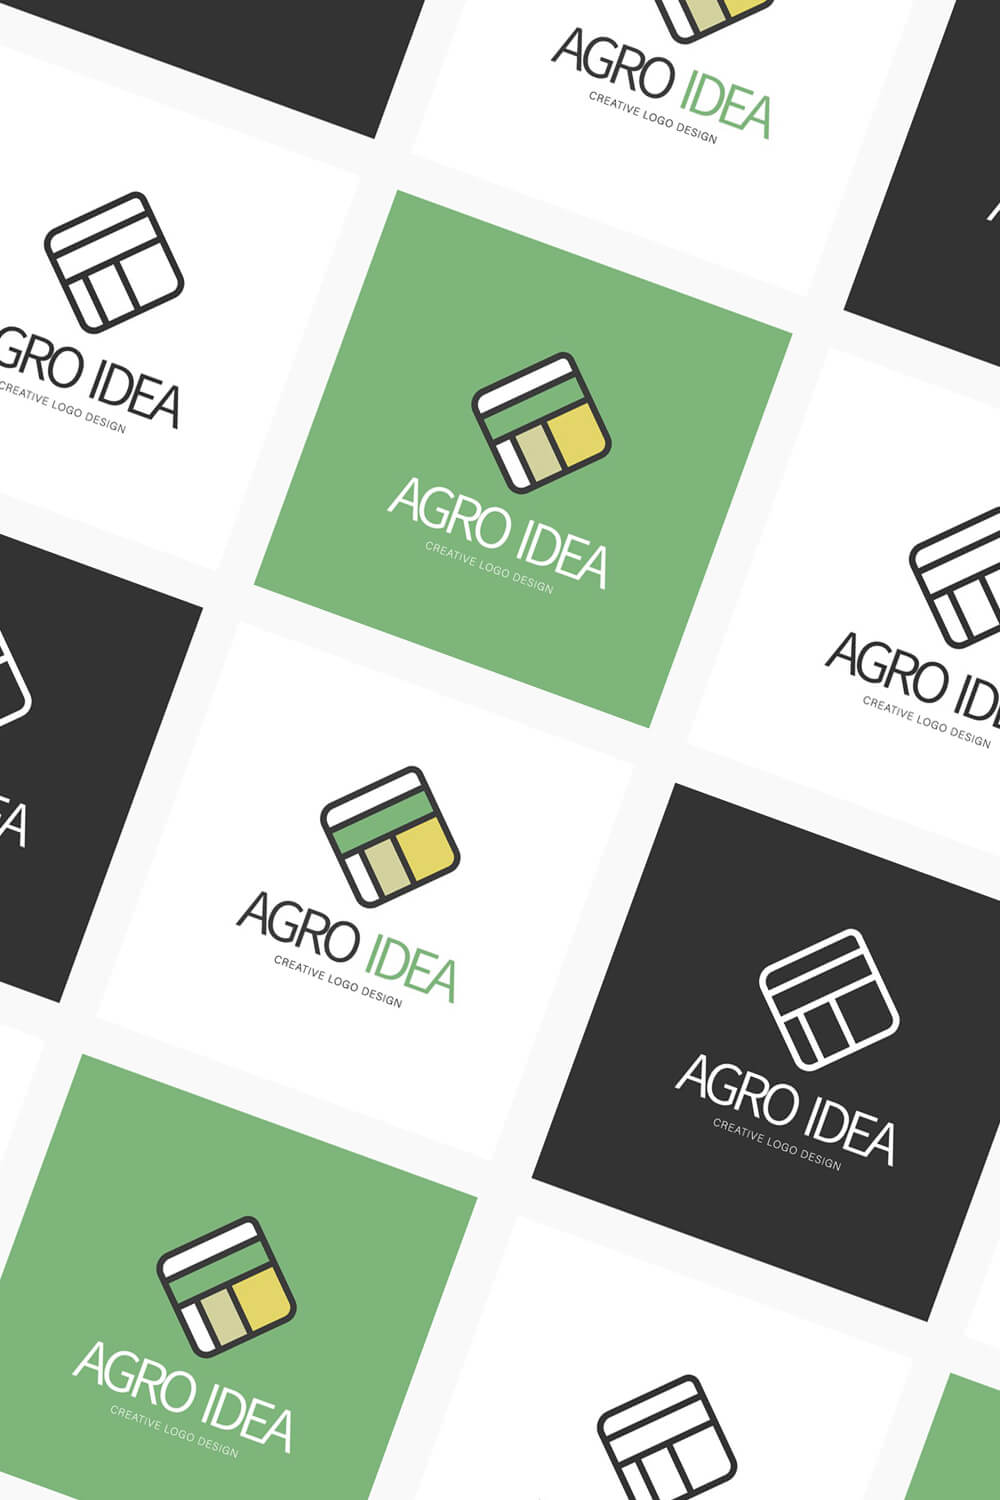 Small logos "Agro Idea" white-gray-green-yellow on a green, white, gray background.